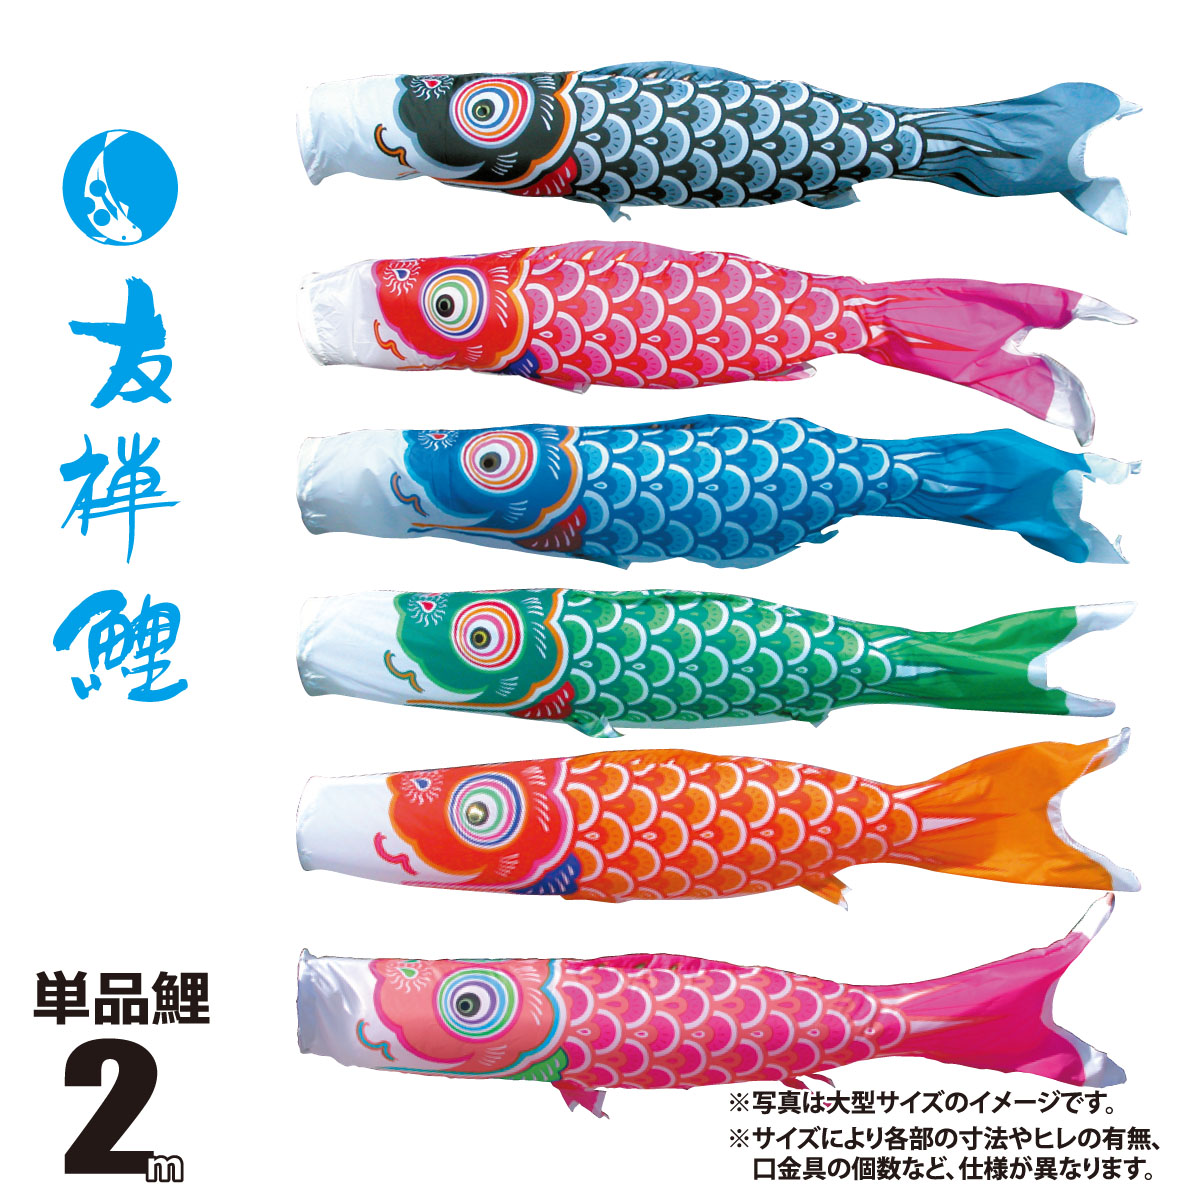 【楽天市場】鯉のぼり 単品 友禅鯉 1.5m 口金具付き カラー 黒鯉|赤